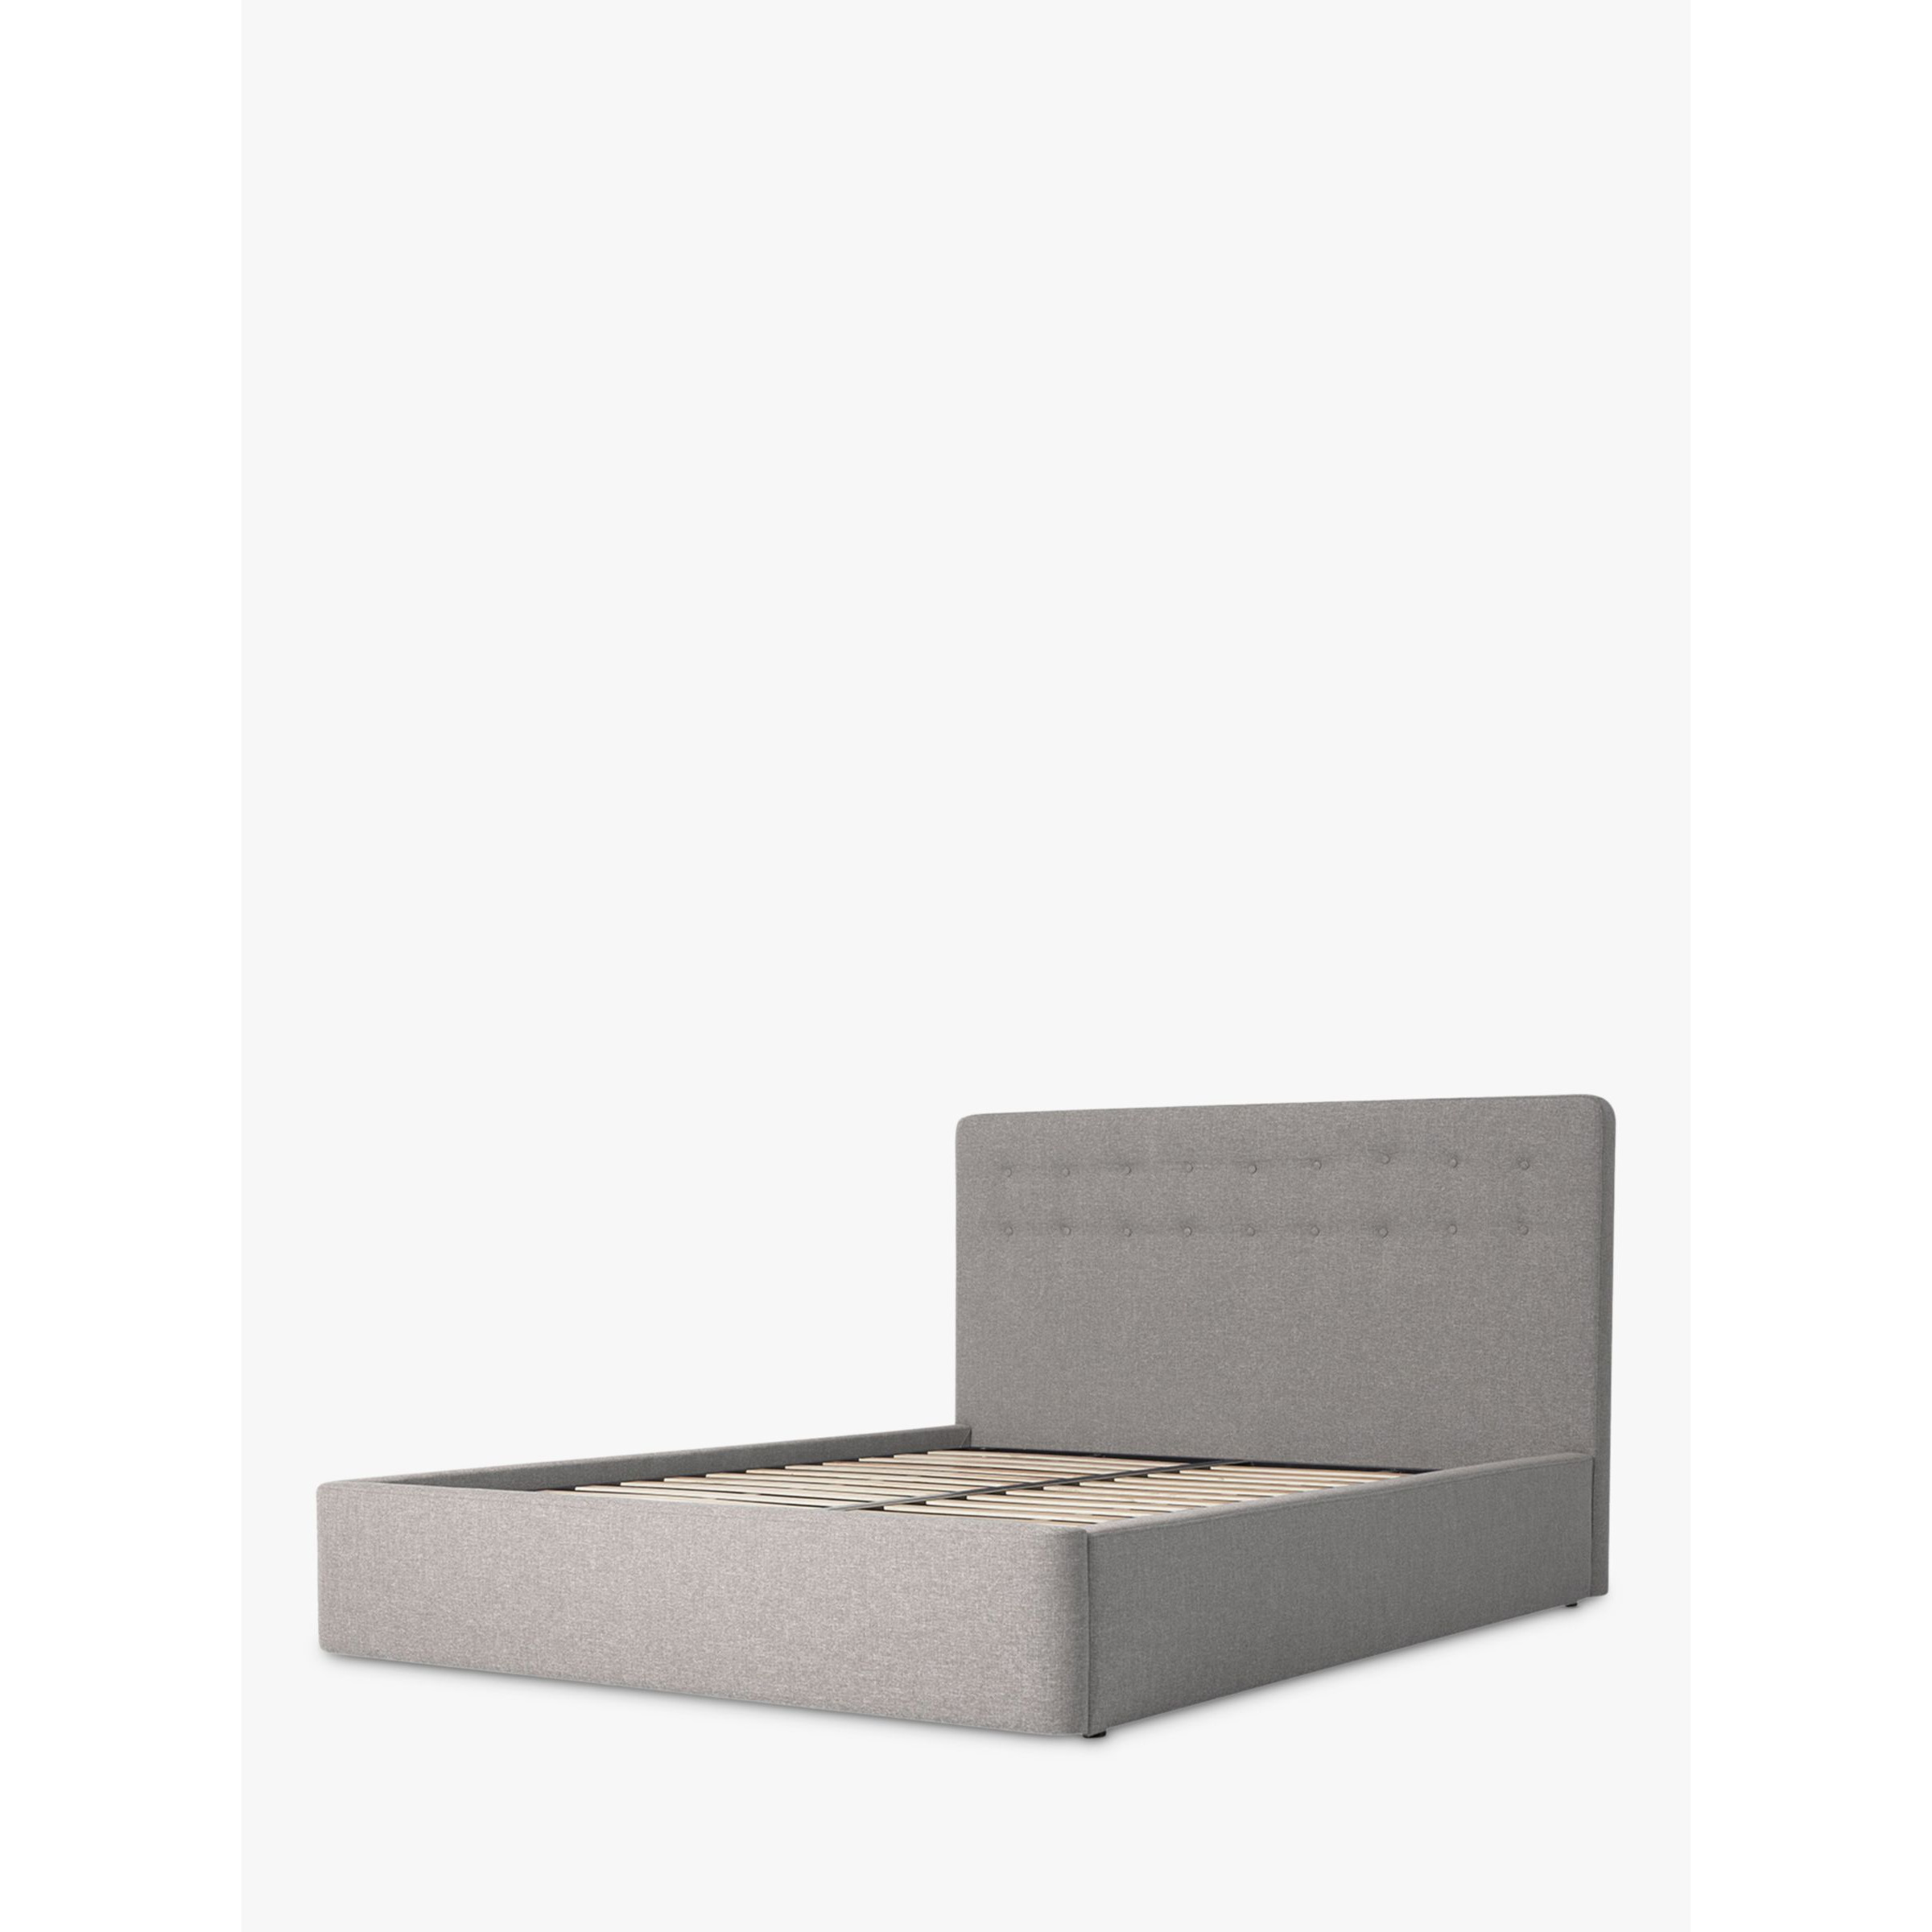 Swyft Bed 01 Upholstered Bed Frame, King Size - image 1